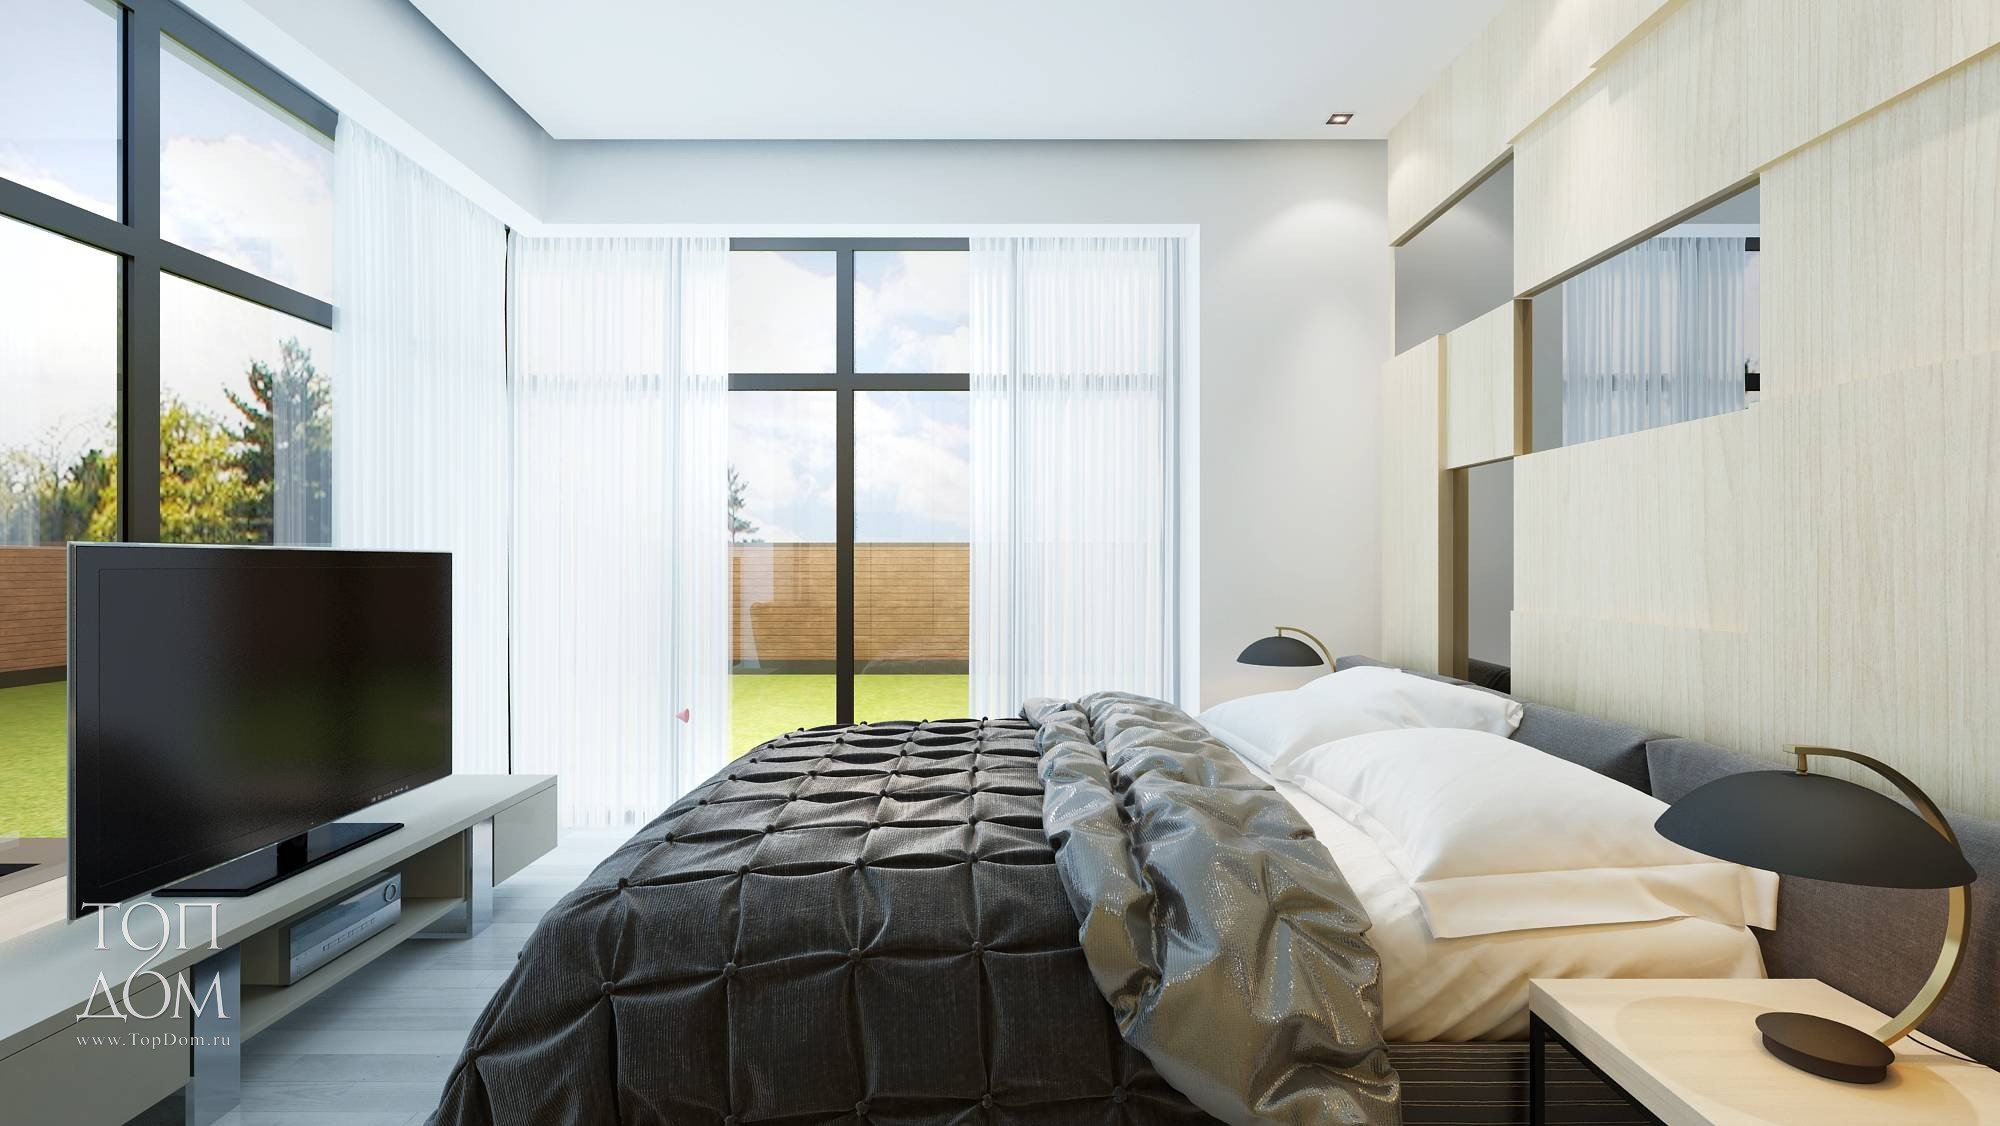 В спальне перед телевизором. Спальня с двумя панорамными окнами. Кровать напротив окна в спальне. Спальня в светлых тонах с панорамными окнами. Кровати в спальне с панорамными окнами.